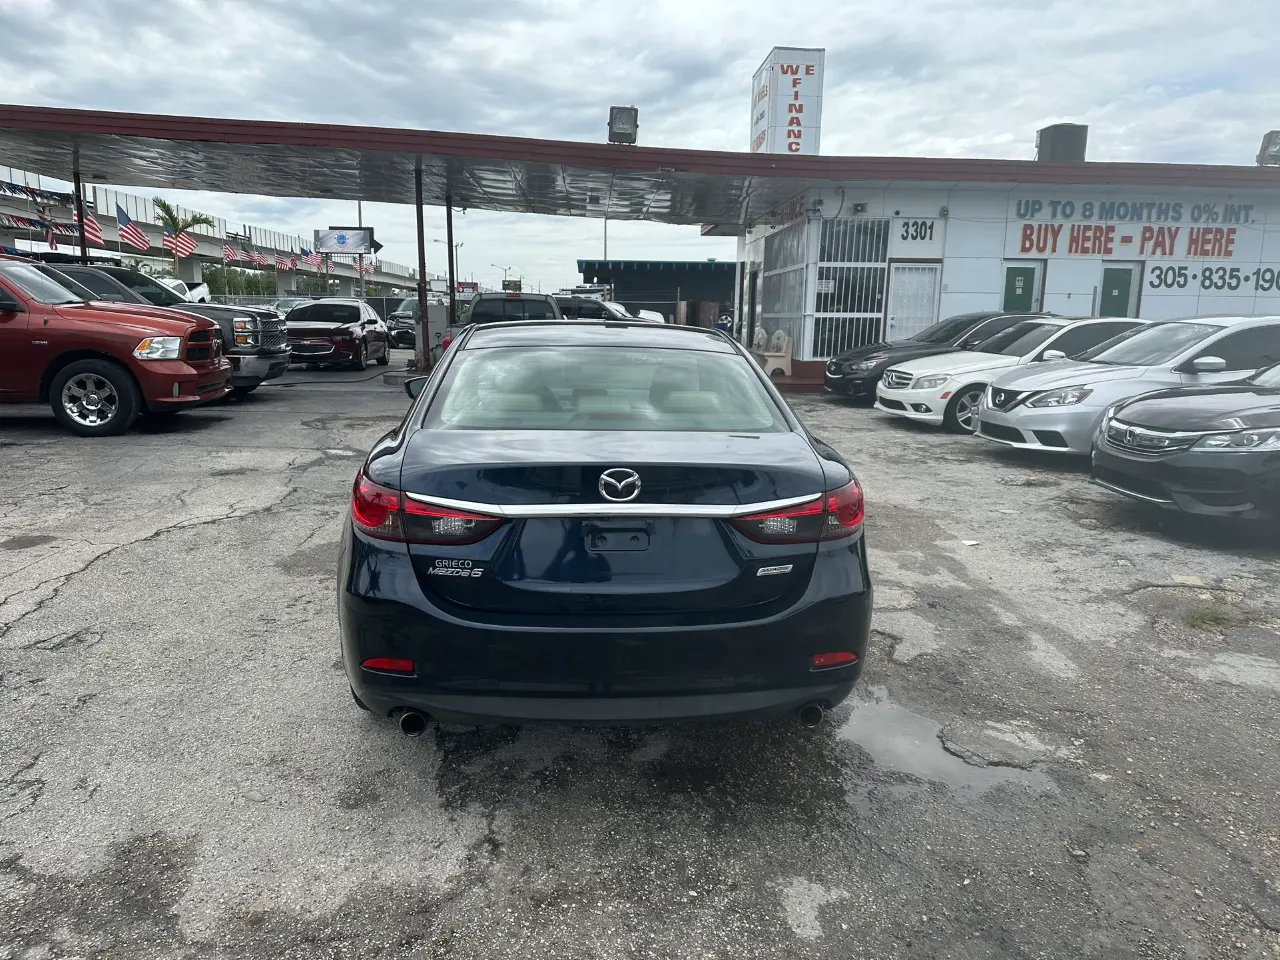 used 2017 Mazda 6 - back view